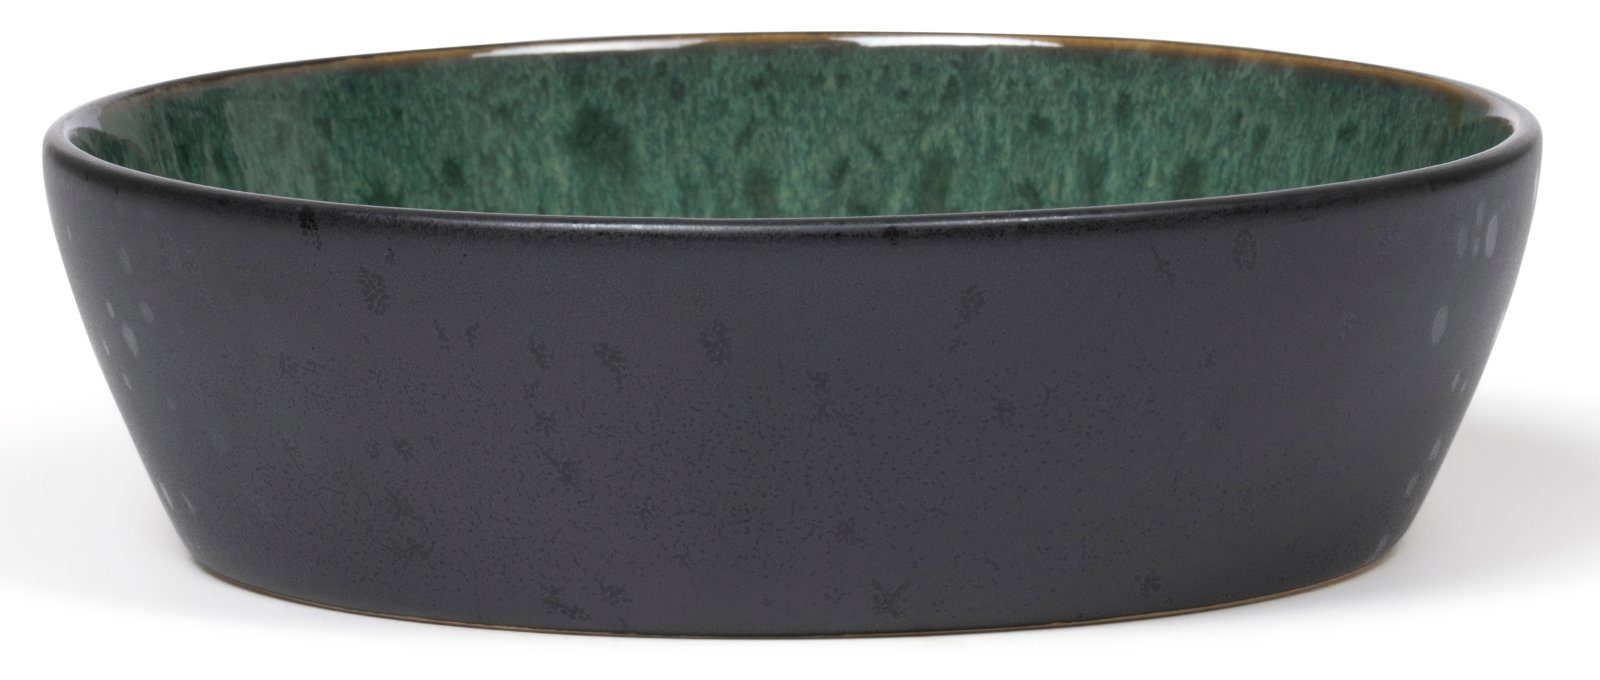 Bitz Schale Bowl black / green 18 cm, Steinzeug, (Bowl)